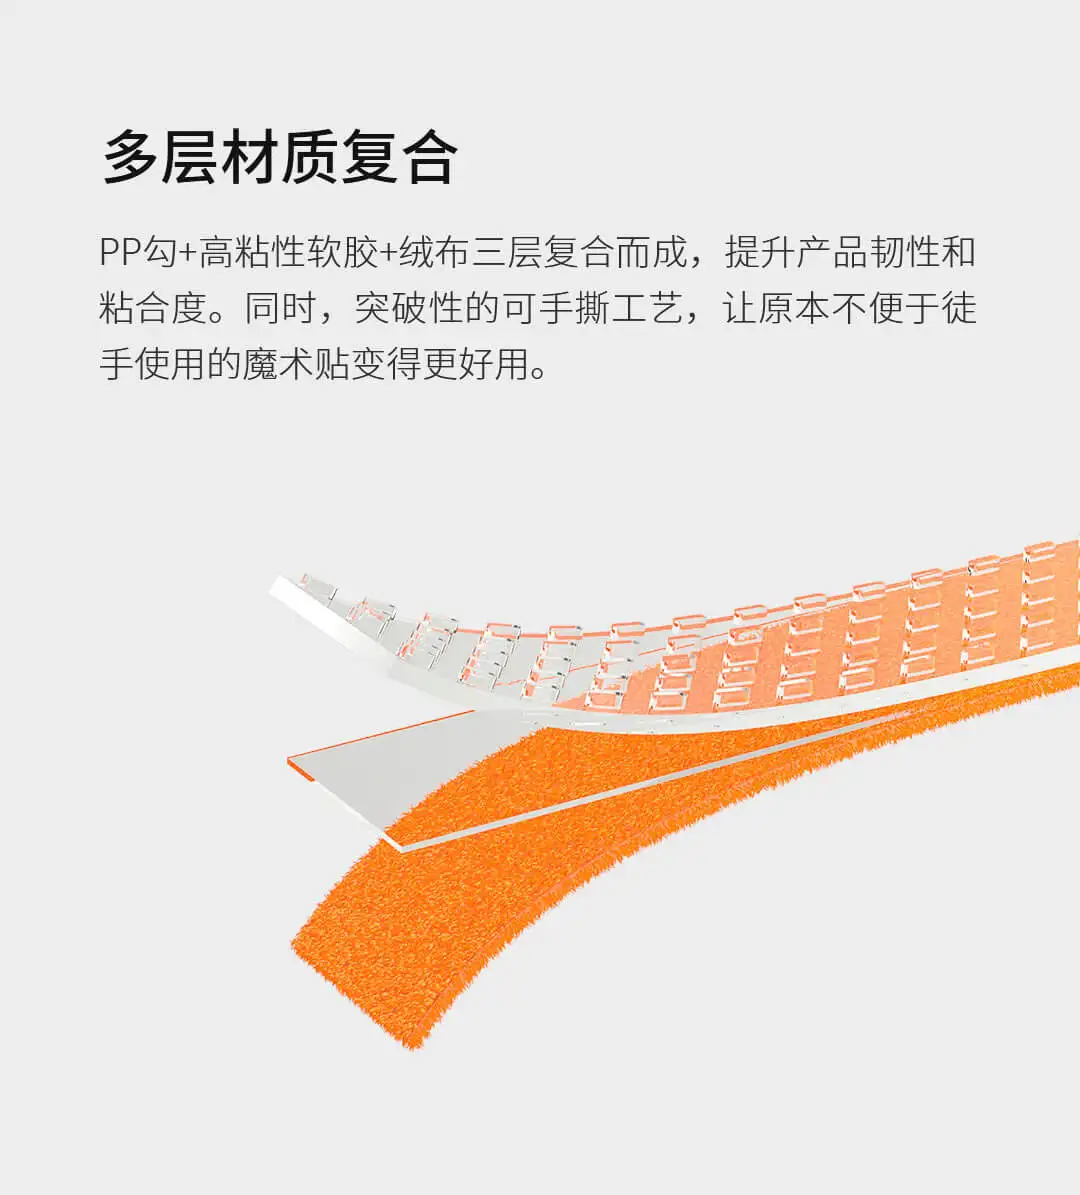 Xiaomi Youpin Bcase разрывная липучка легко использовать легко хранить ПП Крюк Материал провода для хранения подходит для офиса автомобиля учебы